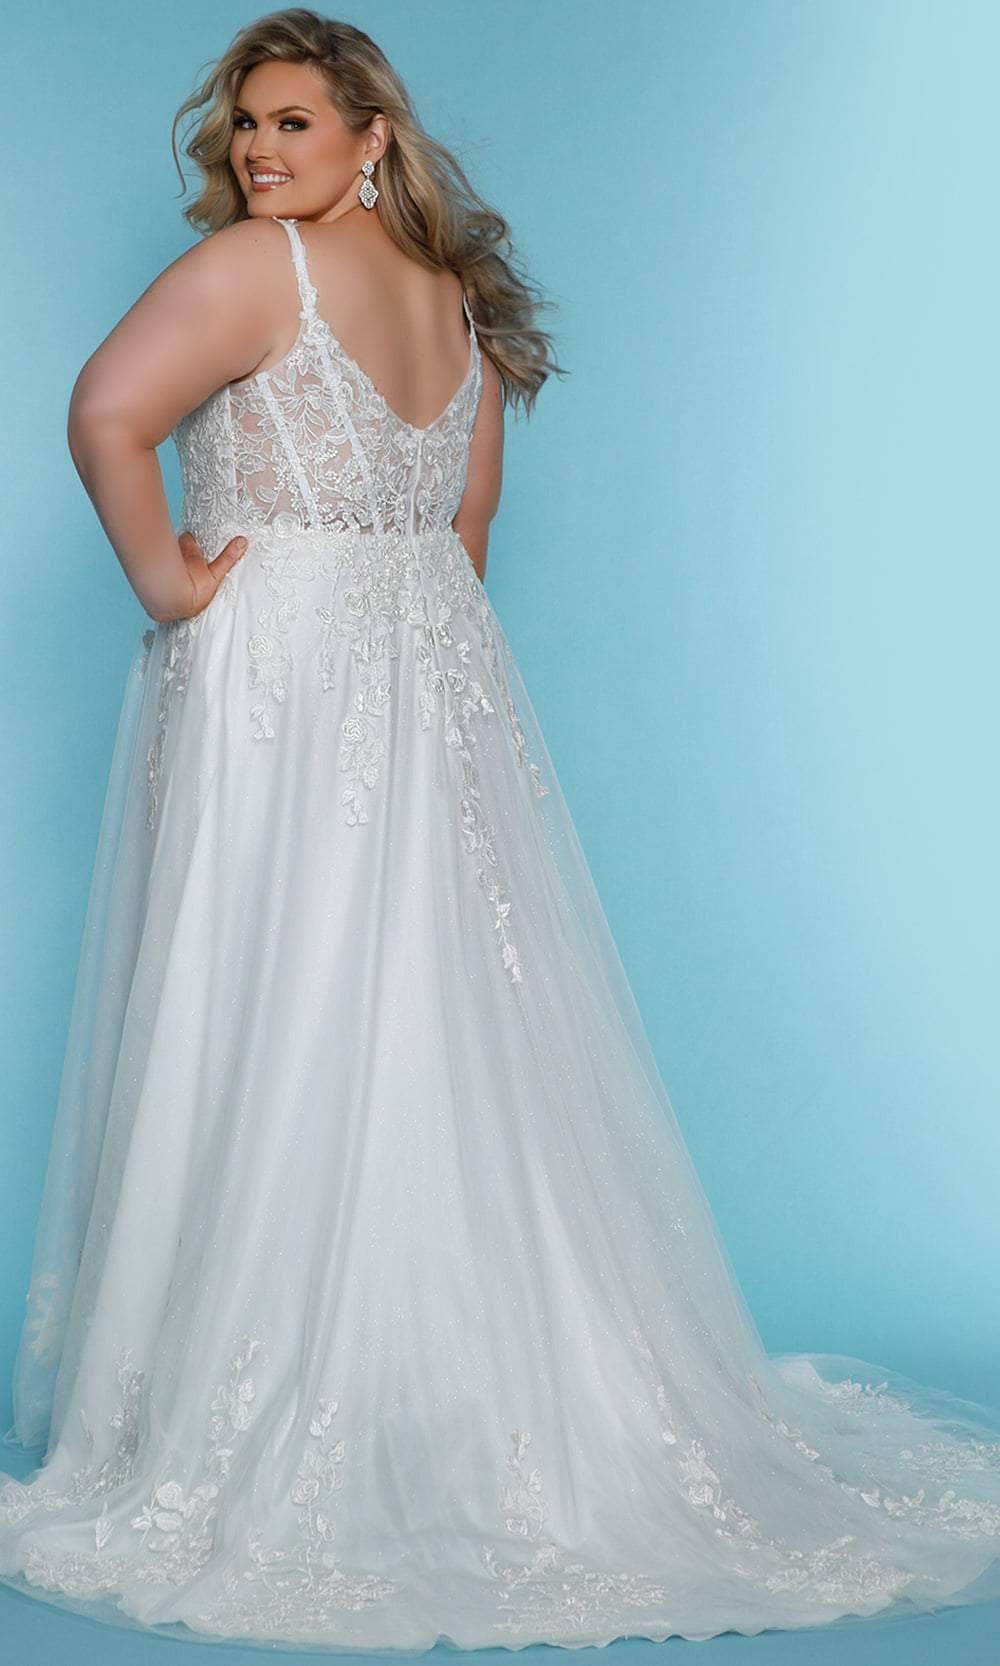 Sydney's Closet Bridal SC5322 - Sleeveless Floral Lace Applique Gown